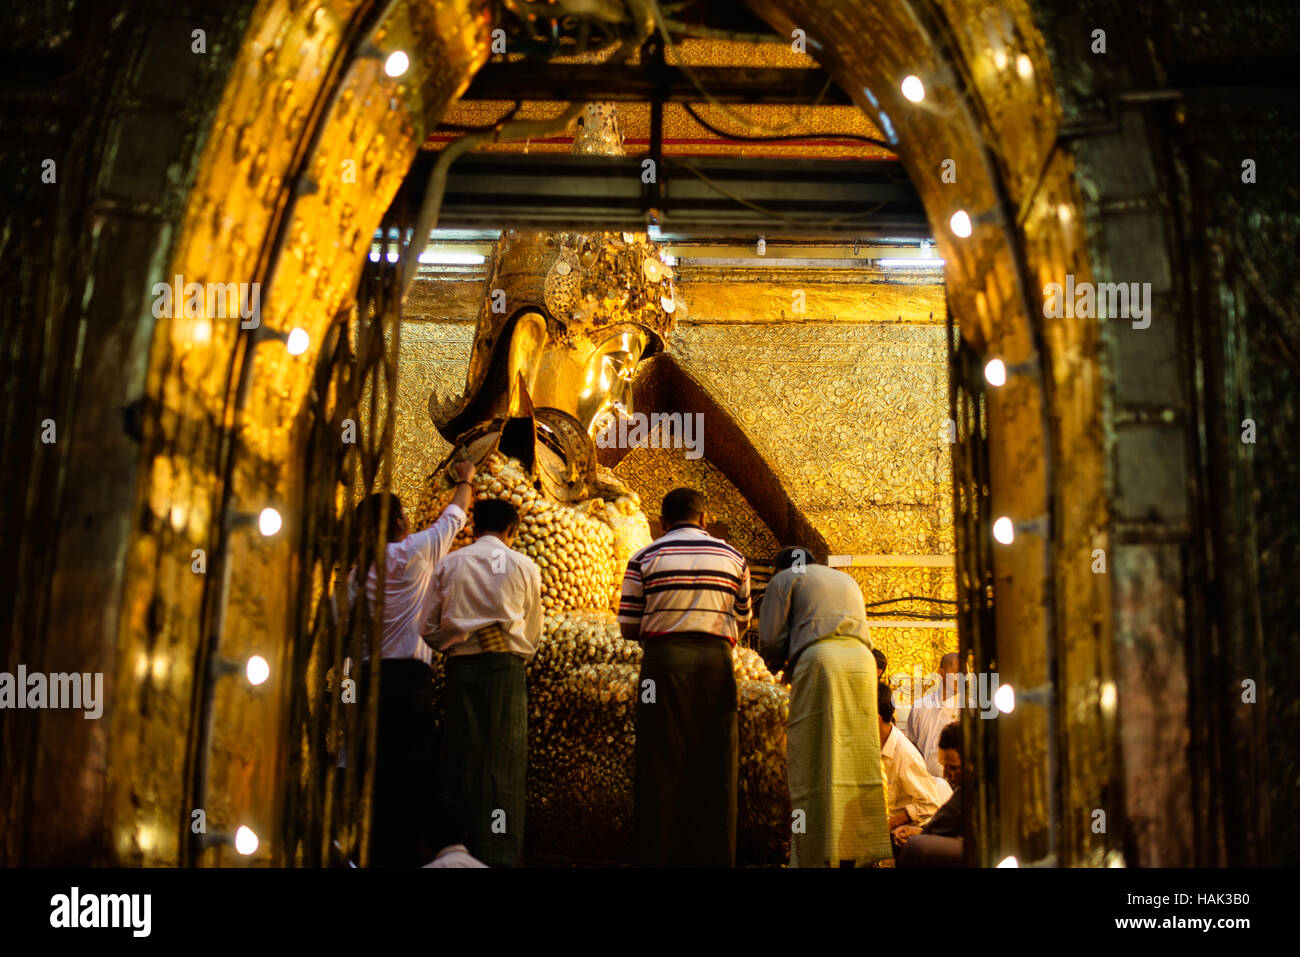 MANDALAY, Myanmar - Mahamuni Tempio del Buddha (noto anche come Pagoda Mahamuni) è altamente venerato sito religioso di Mandalay. Il suo cuore è il Buddha Mahamuni image, rinomato per essere uno dei soli cinque fattezze originale del Buddha fatta durante il suo ciclo di vita. È rivestito di lamina di oro donata a tributi da fedeli e pellegrini. Foto Stock